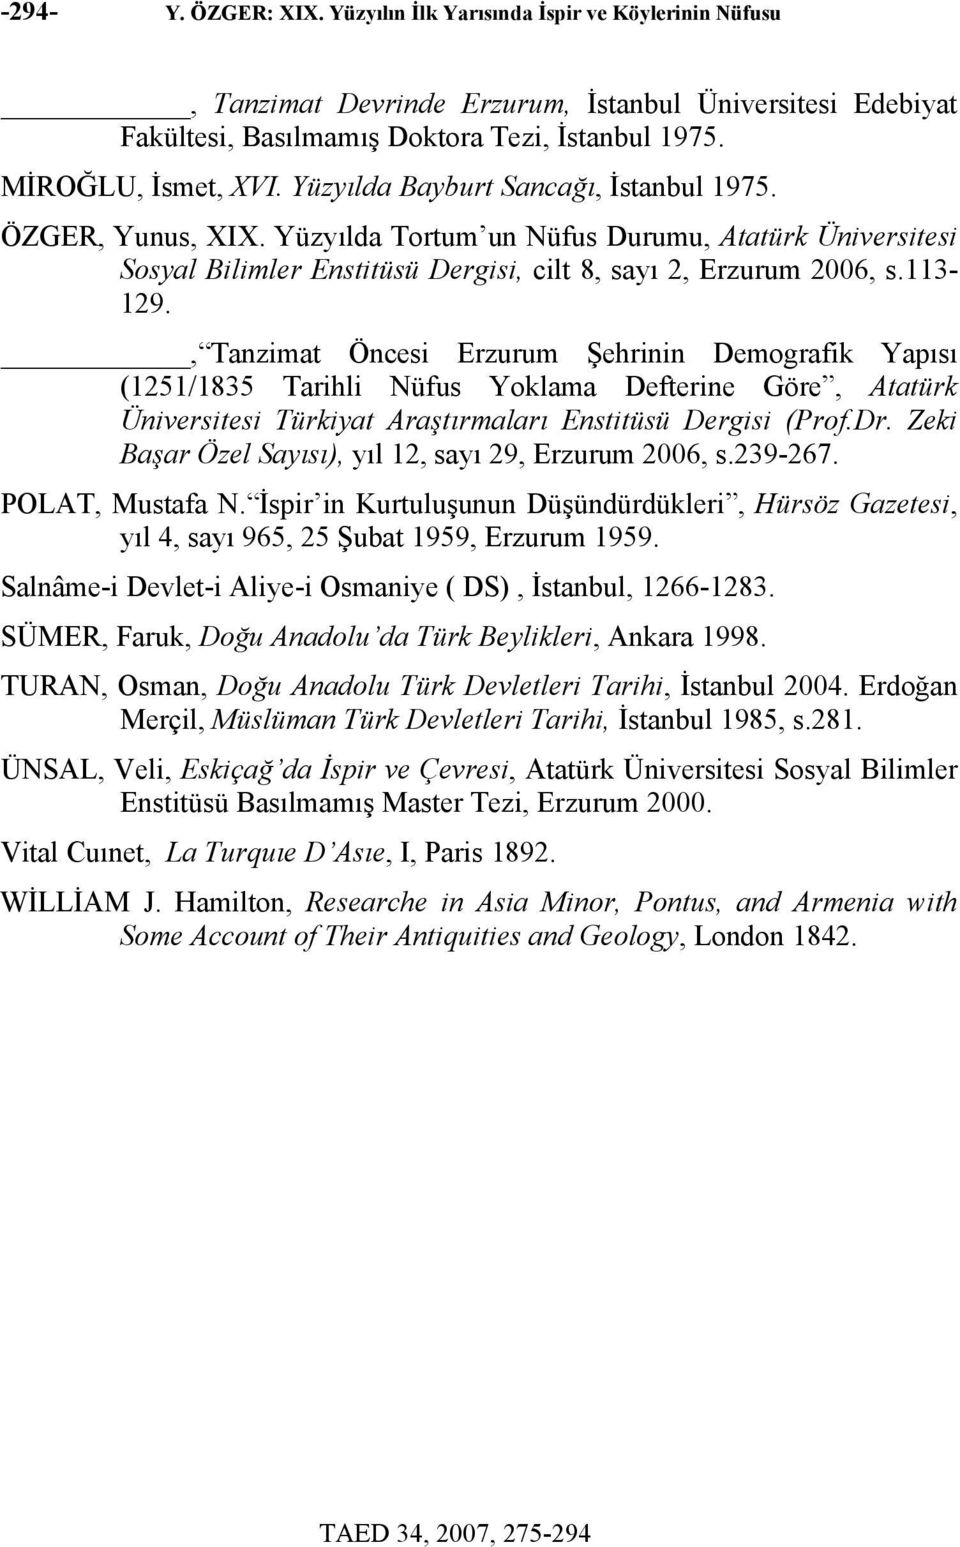 Yüzyılda Tortum un Nüfus Durumu, Atatürk Üniversitesi Sosyal Bilimler Enstitüsü Dergisi, cilt 8, sayı 2, Erzurum 2006, s.113-129.